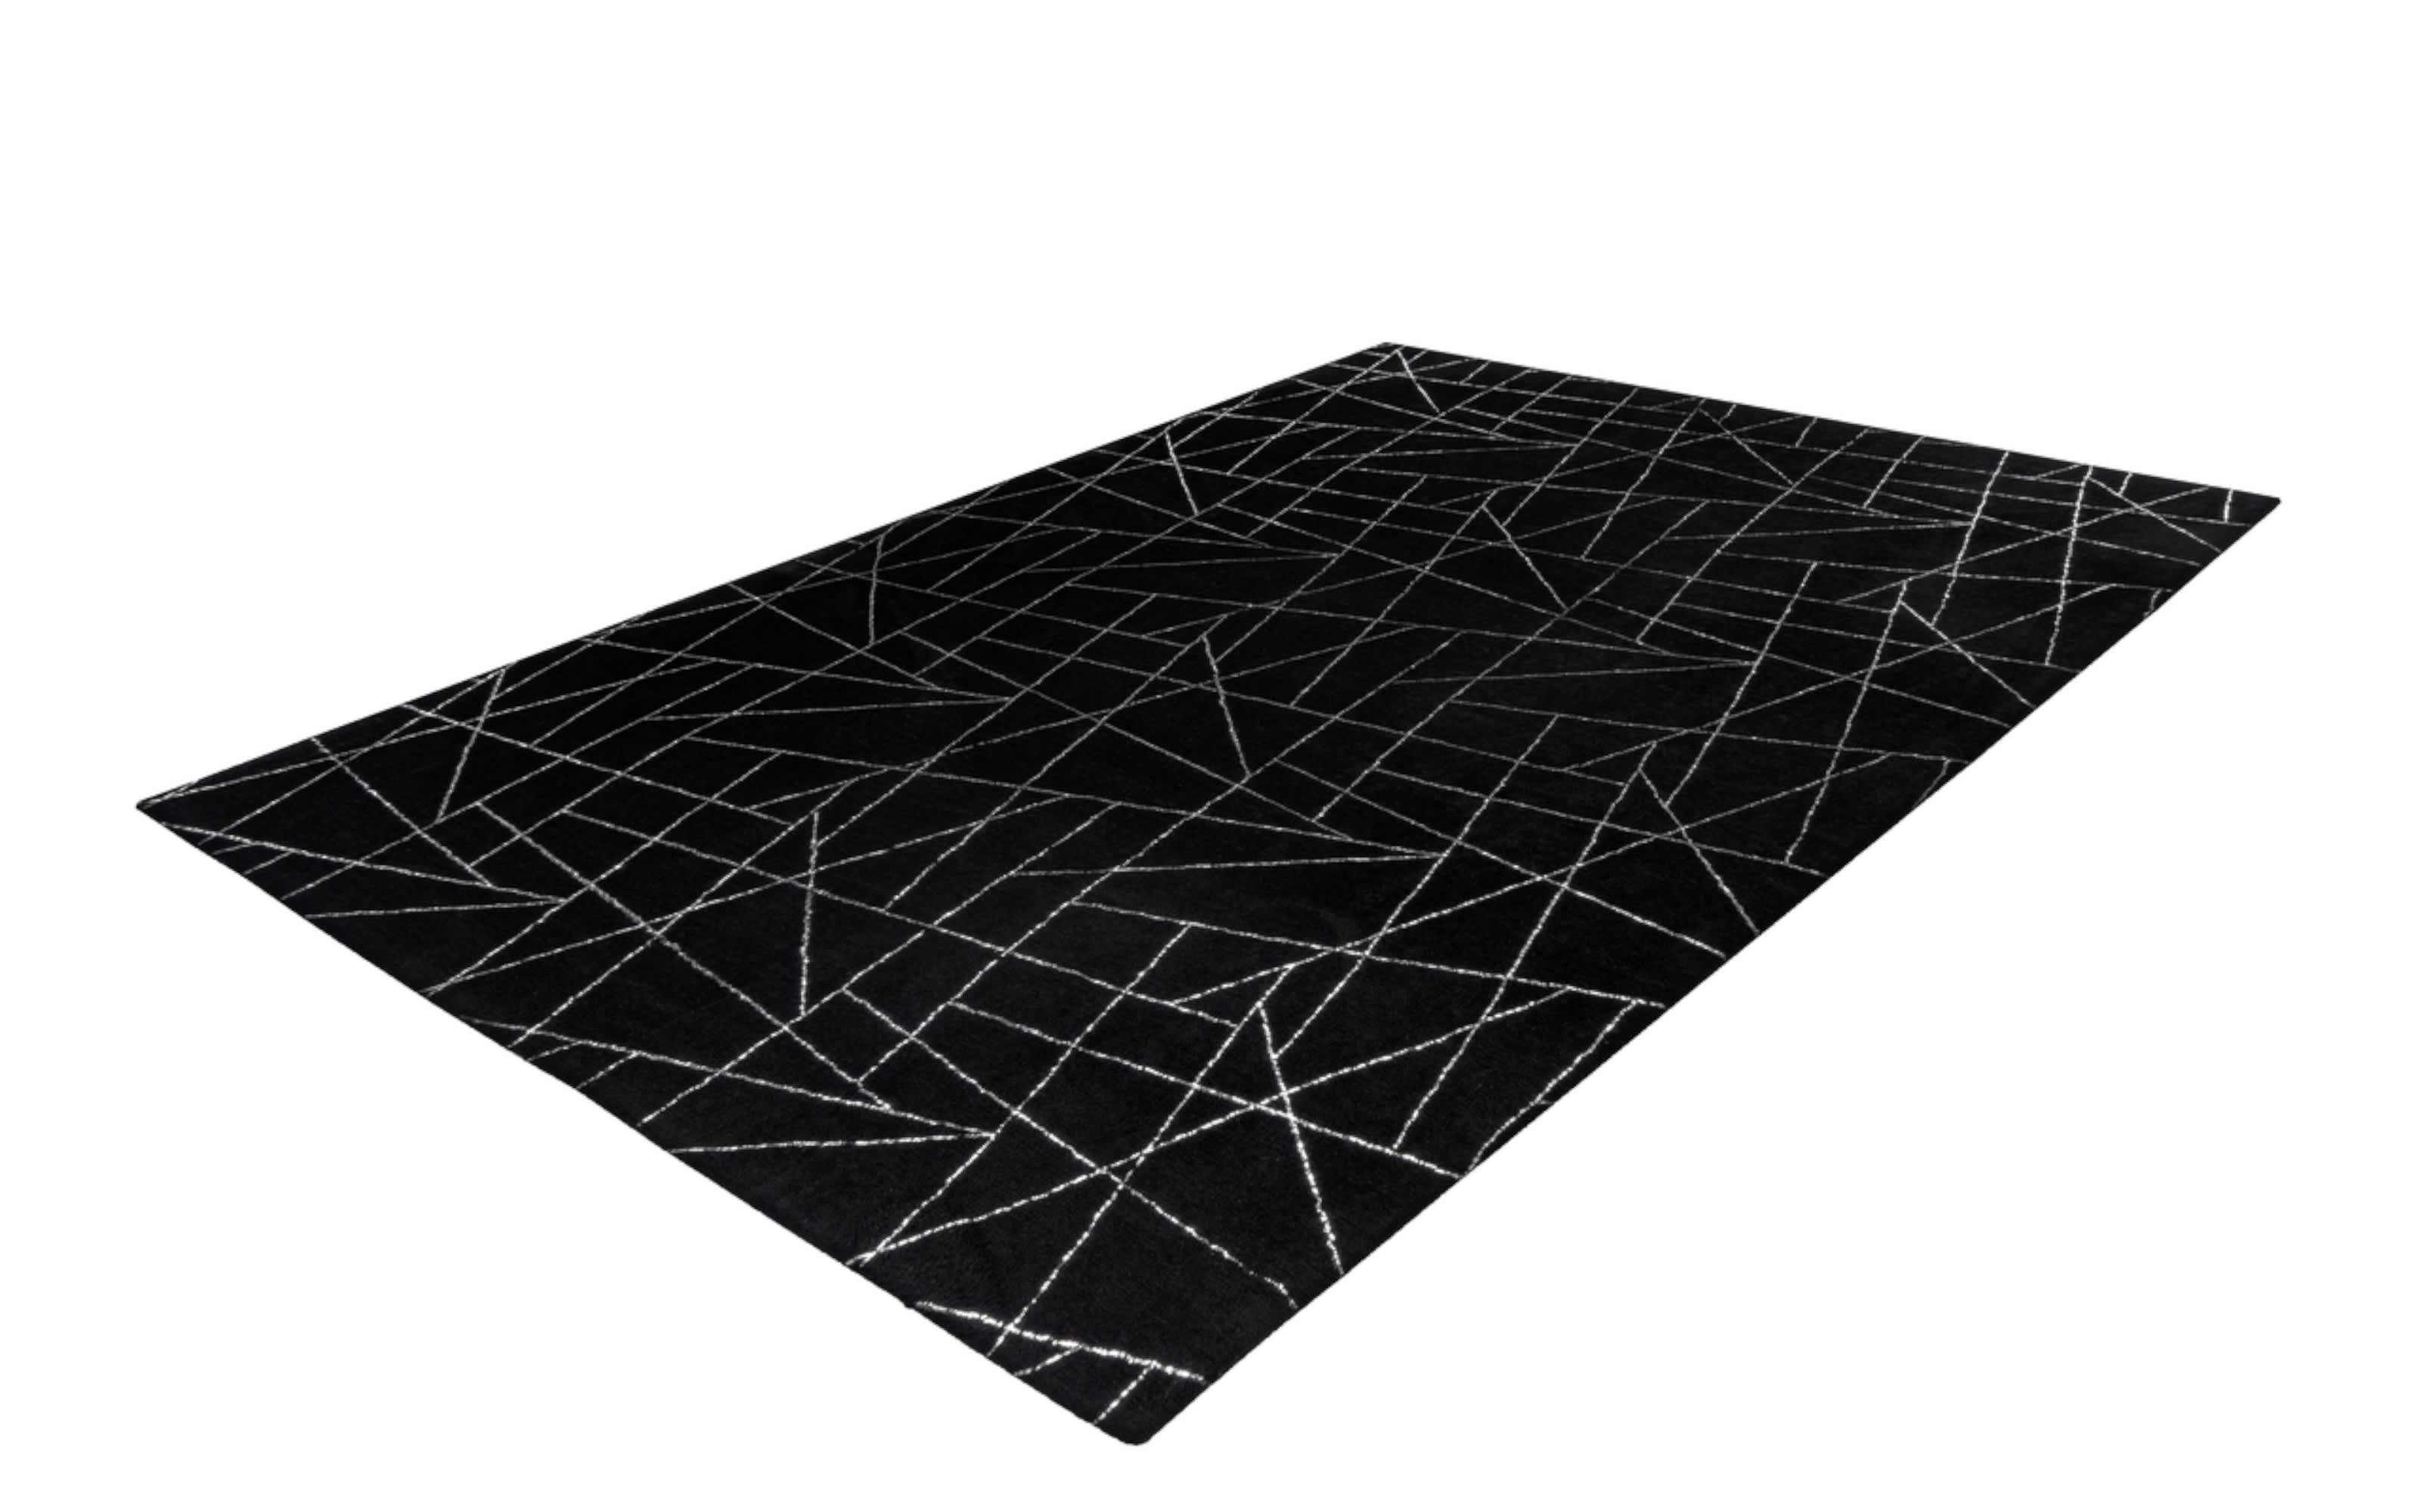 Teppich Bijou 125 in schwarz/silber, ca. 160 x 230 cm